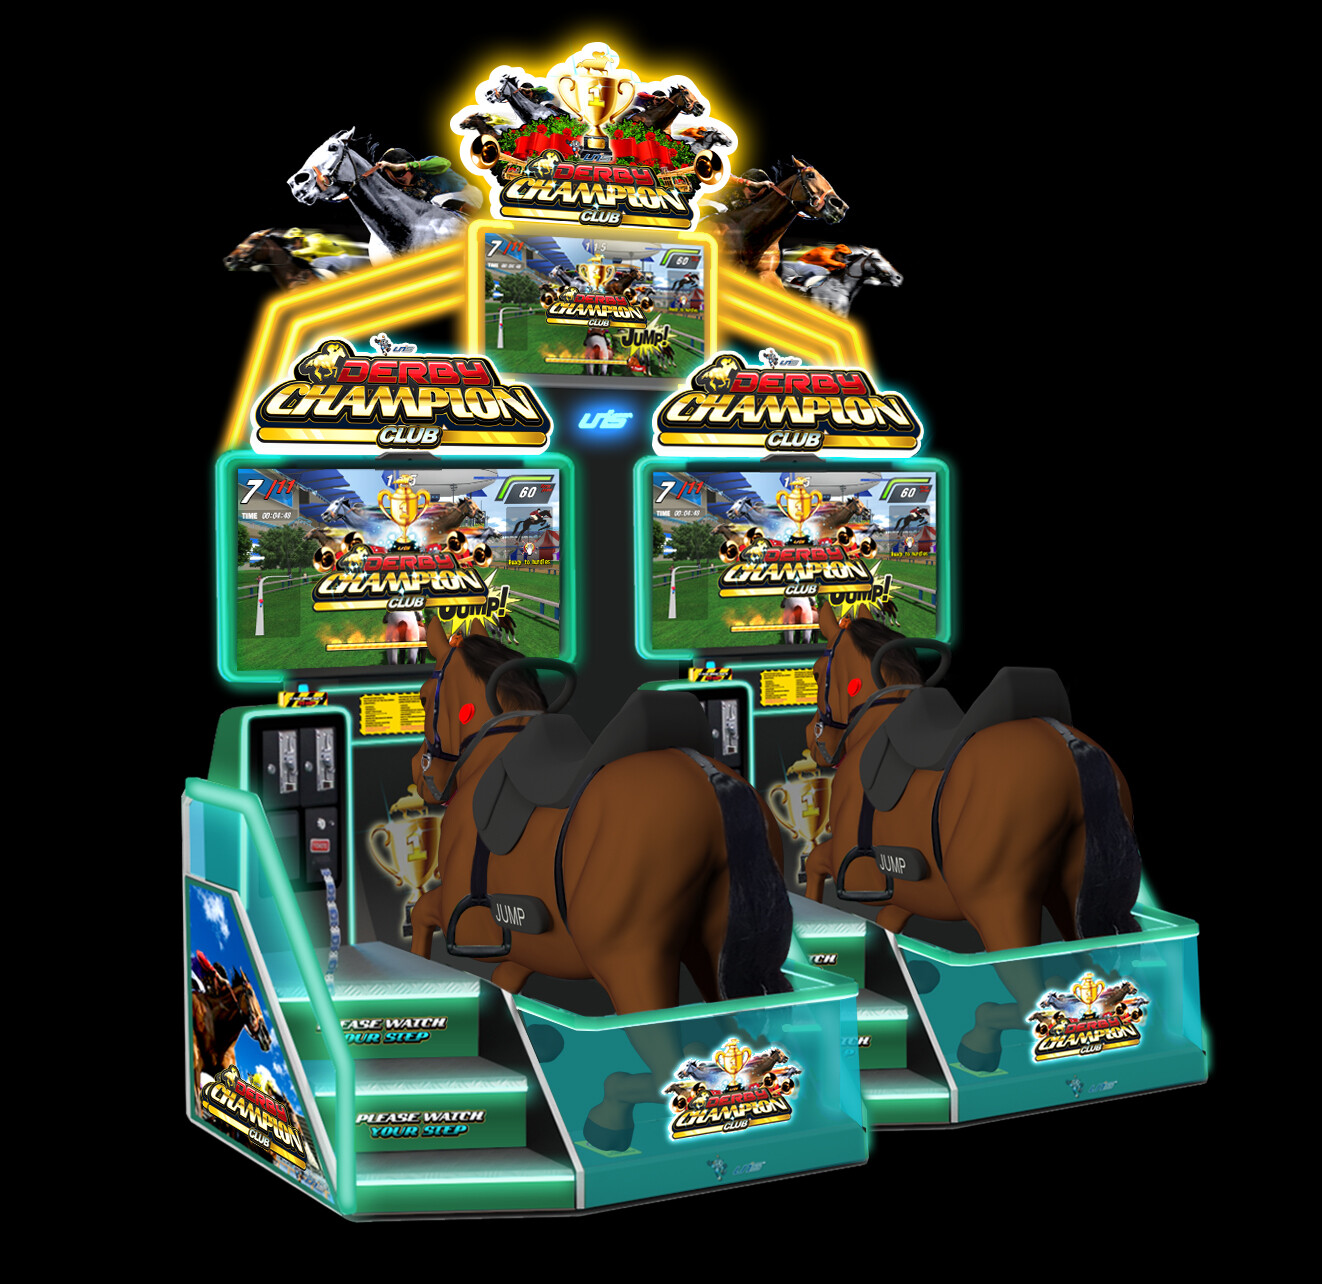 William Qiu - Video Arcade - Derby Champion Club (2018)